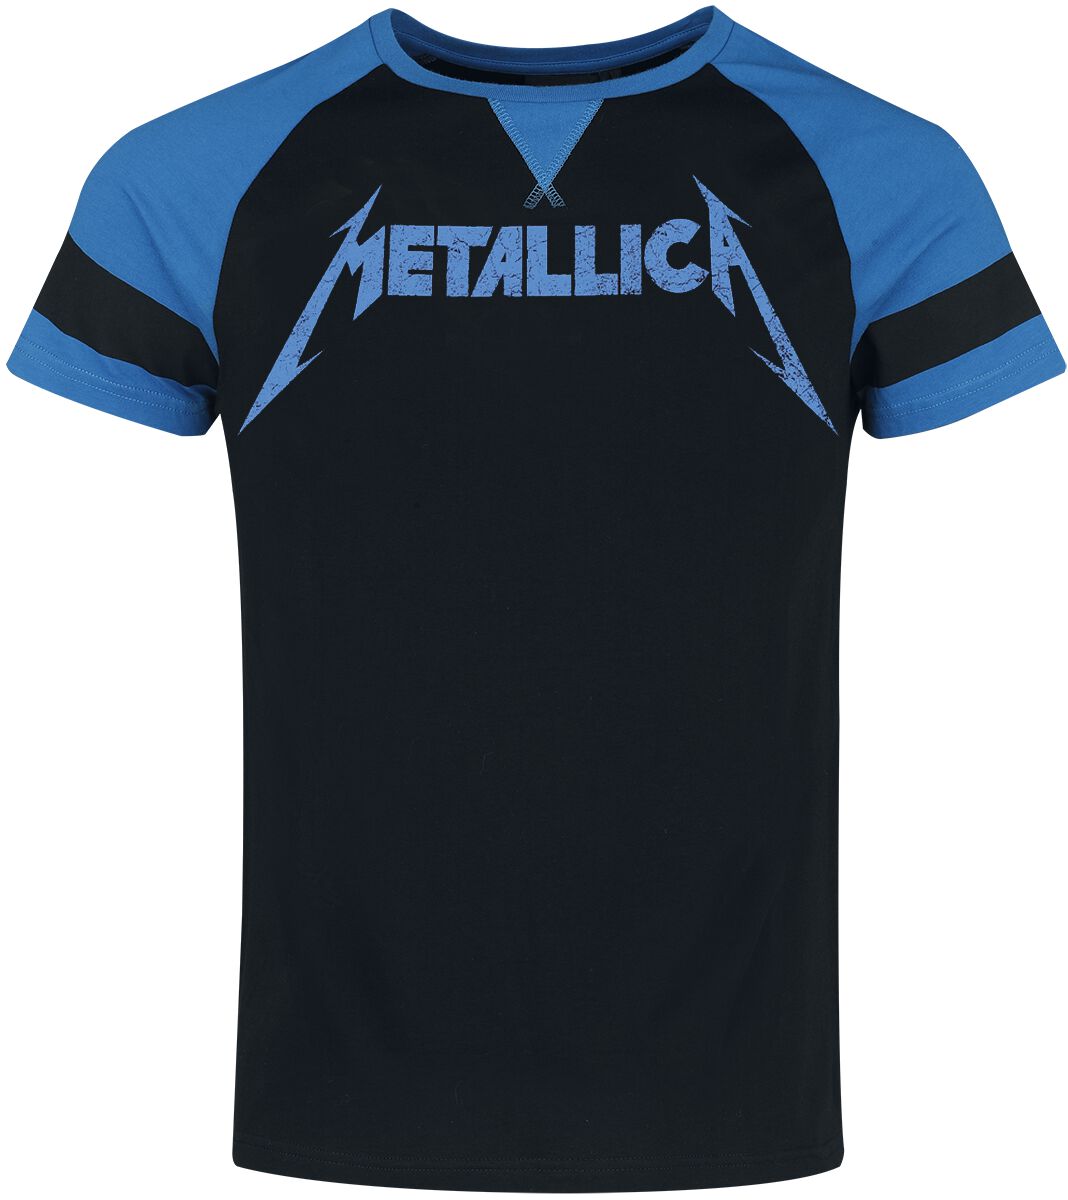 Metallica T-Shirt - EMP Signature Collection - S bis XL - für Männer - Größe L - schwarz/blau  - EMP exklusives Merchandise! von metallica